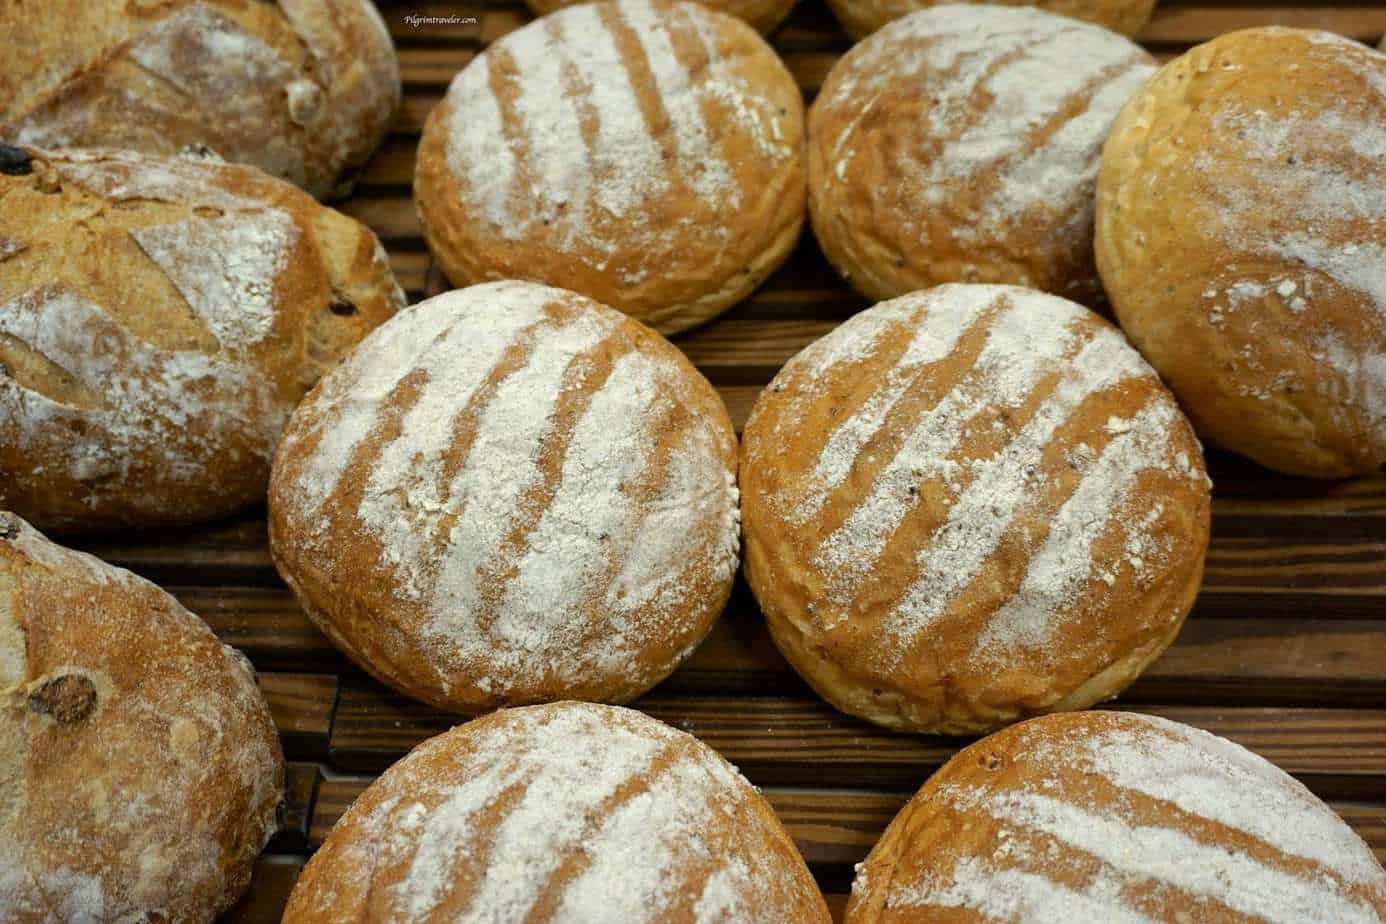 环游世界食谱〜澳大利亚阻尼面包 - 甜甜圈的特写 - 黑麦面包